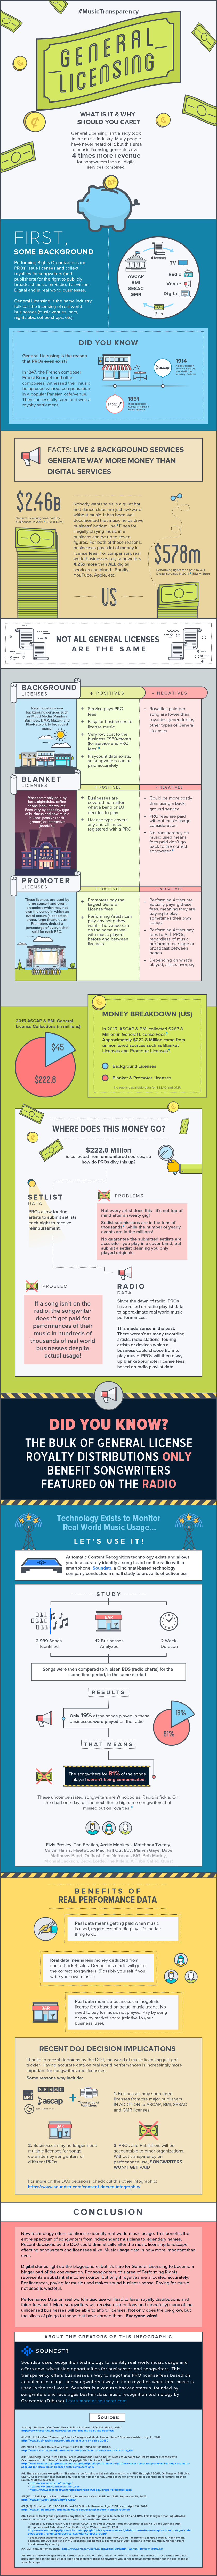 Soundstr General Licensing Infographic